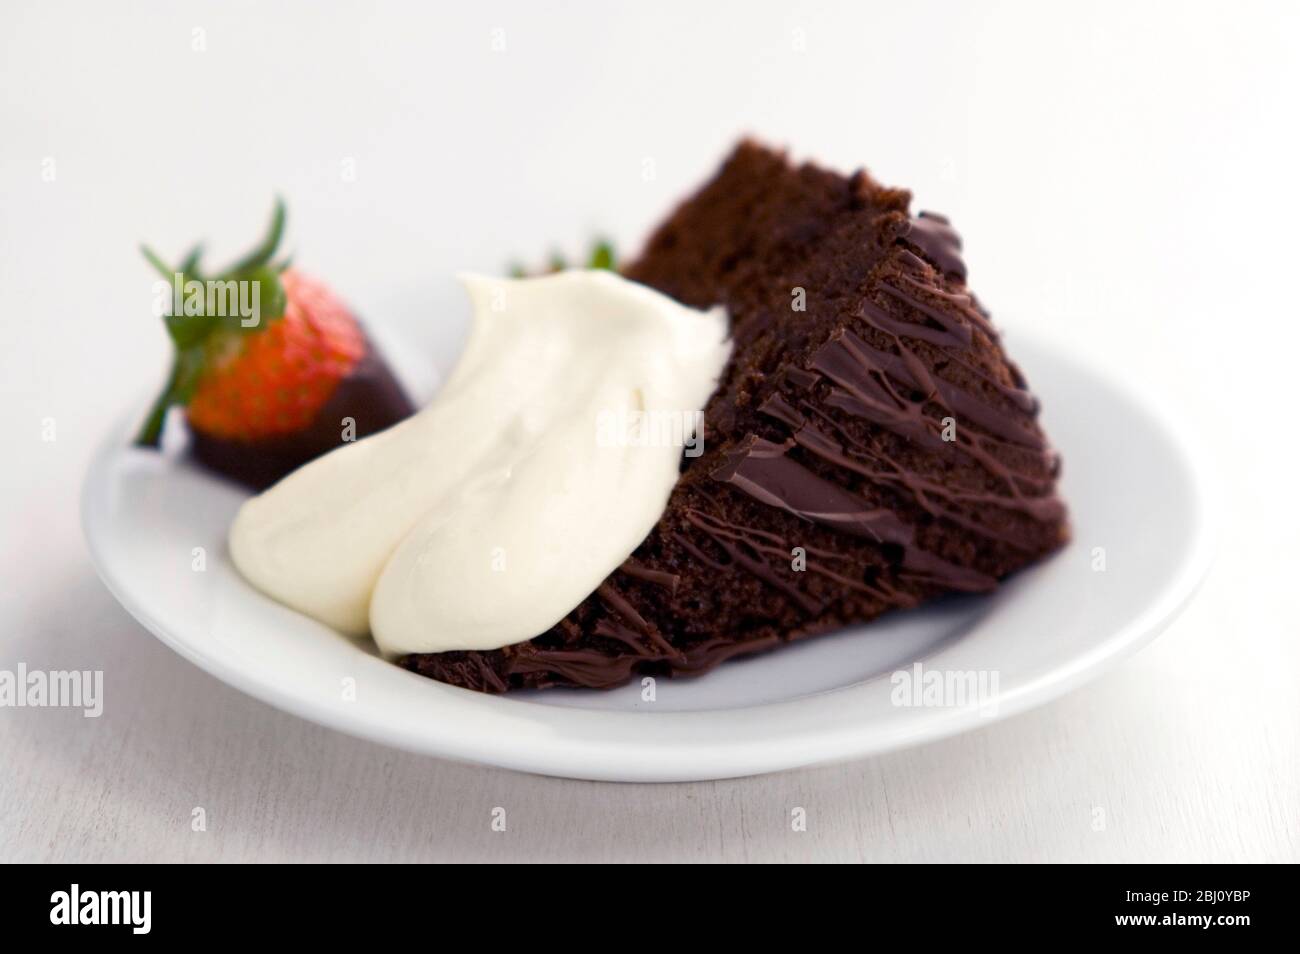 Scheibe von reichen dunklen Schokoladenkuchen mit Klecks Sahne und Erdbeere in Schokolade getaucht - Stockfoto